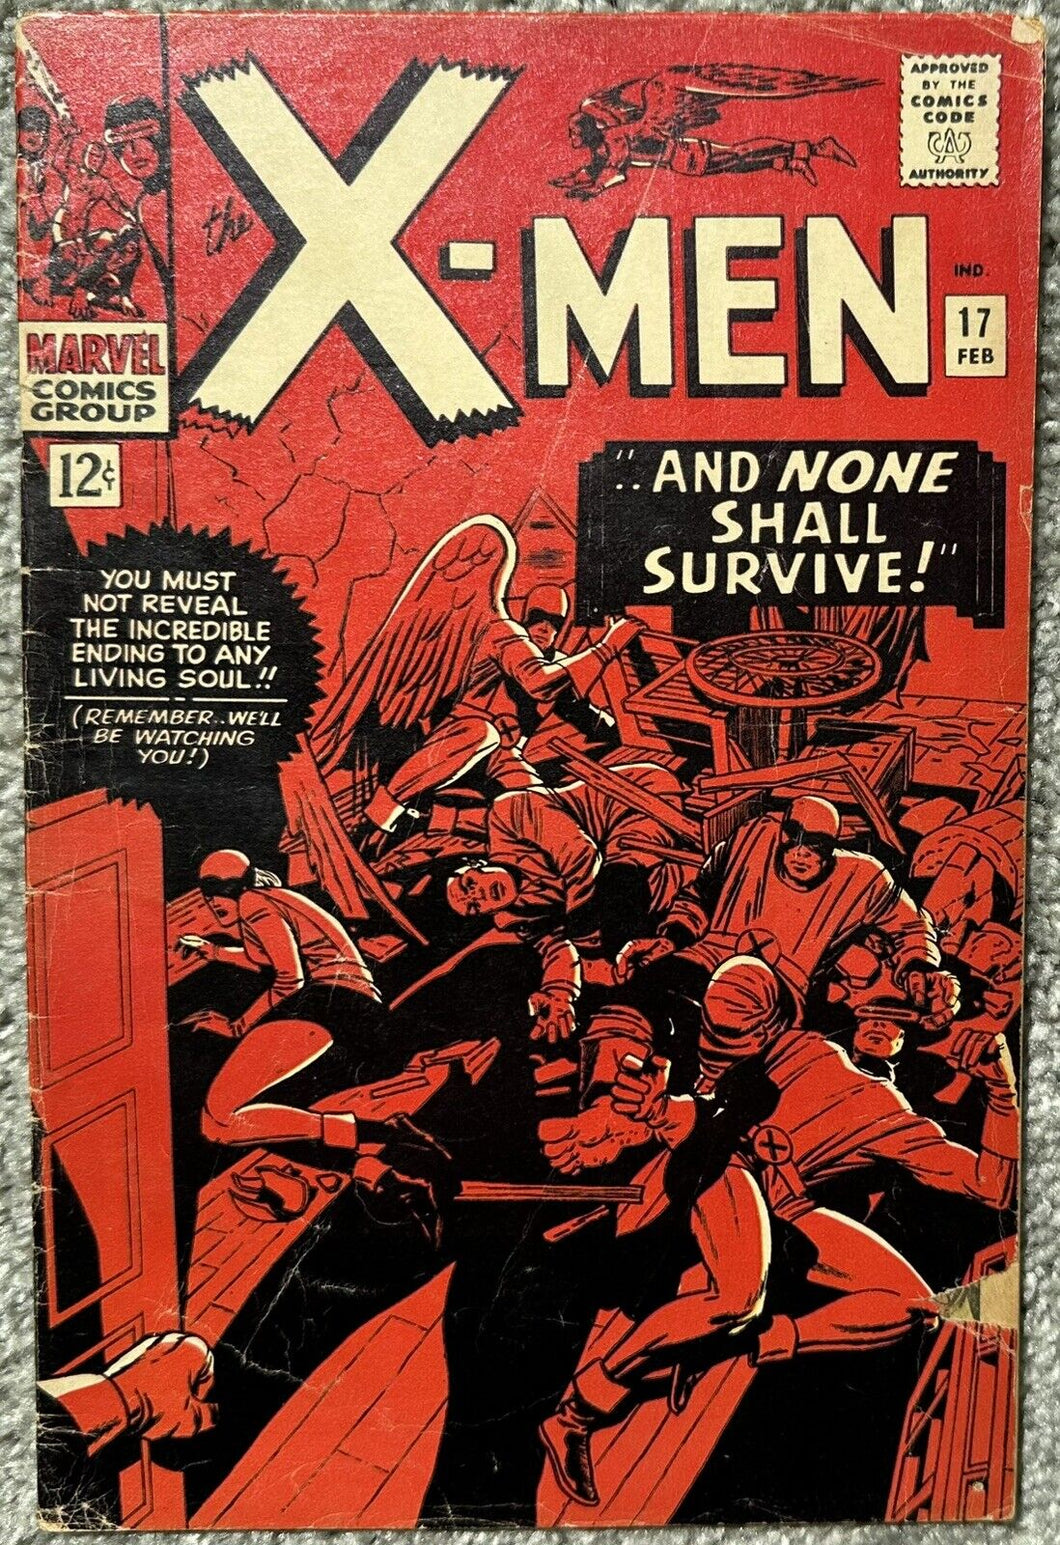 X-MEN #17 (MARVEL,1966) X-Men take on Magneto